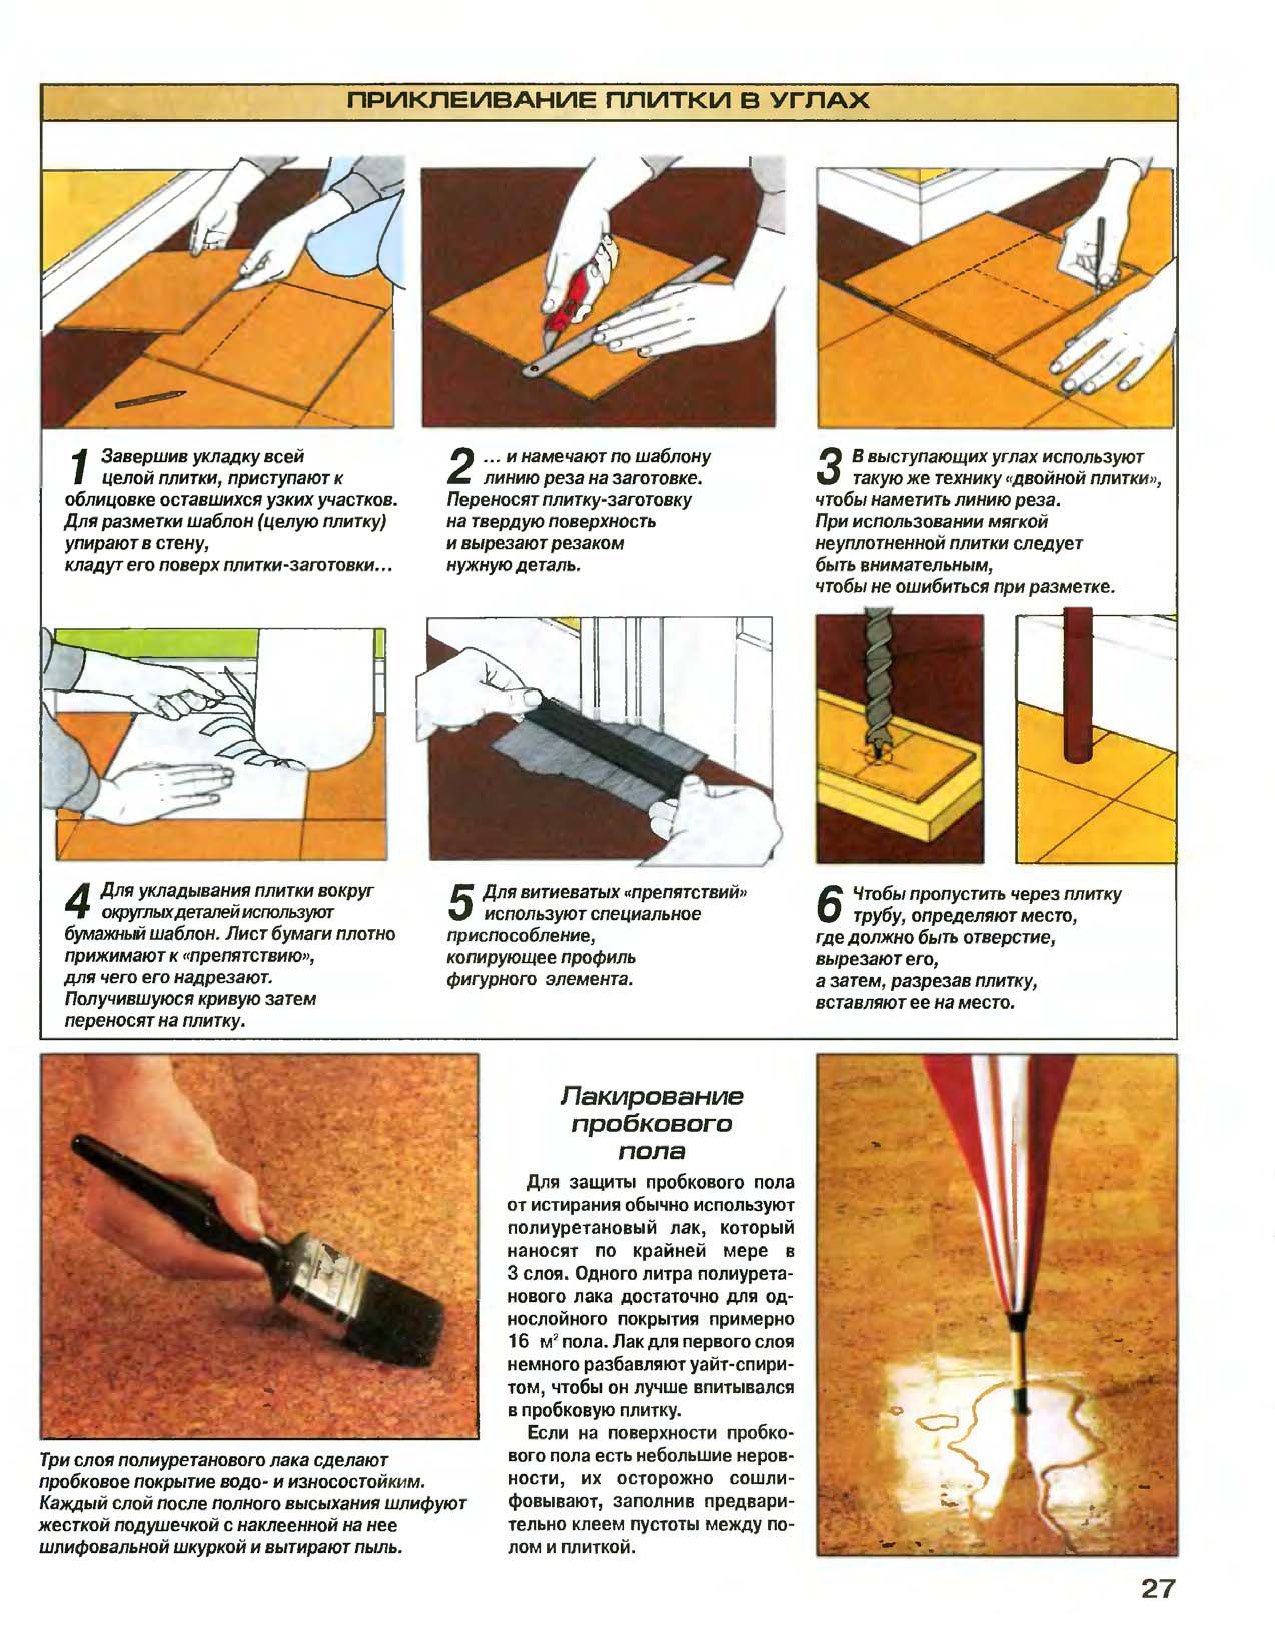 Как укладывать пвх плитку на пол своими руками